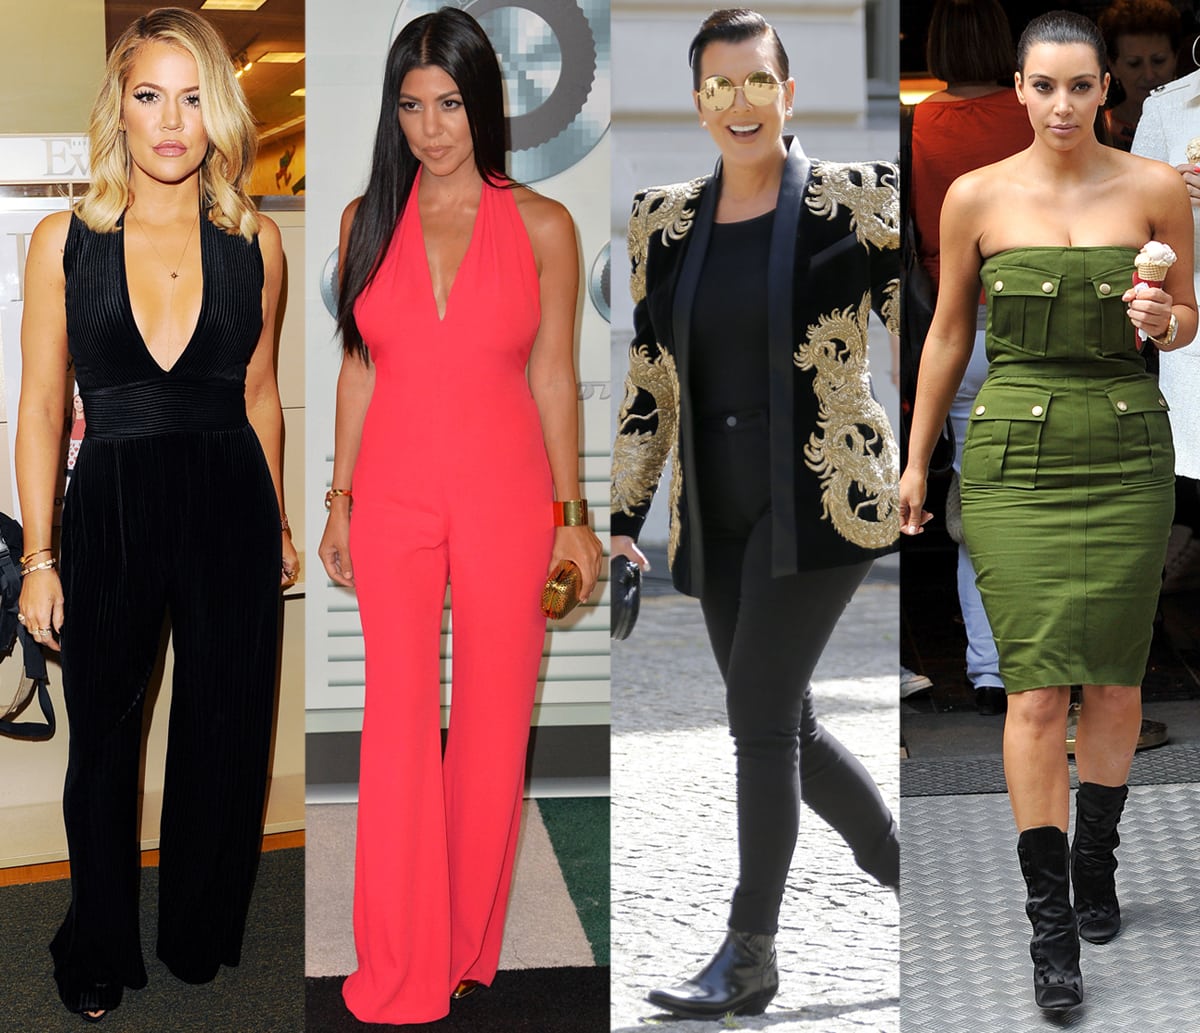 Khloe Kardashian, Kourtney Kardashian, Kris Jenner, and Kim Kardashian wearing Balmain